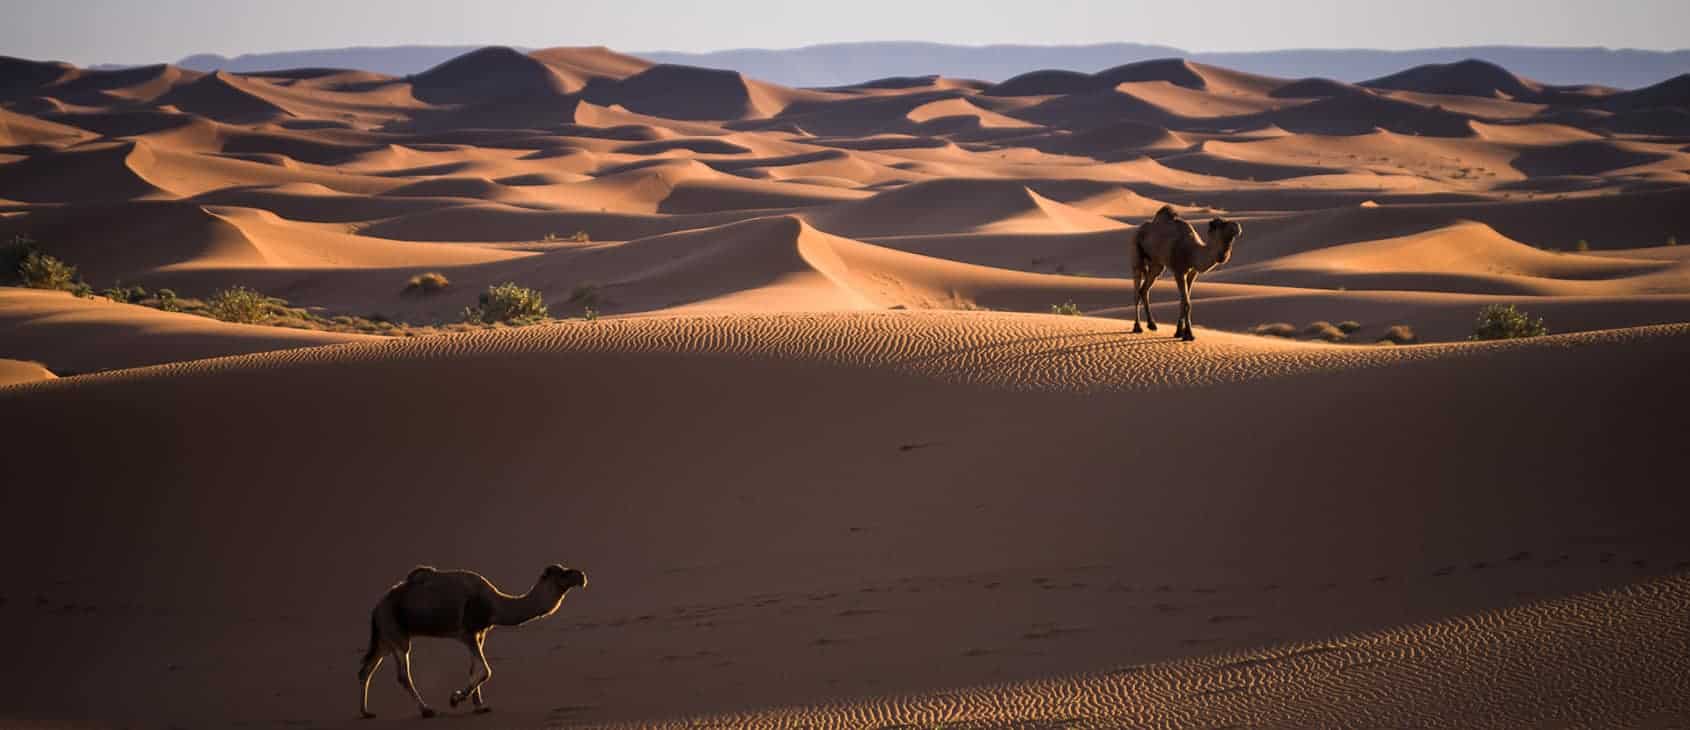 Camels, Erg Chigaga